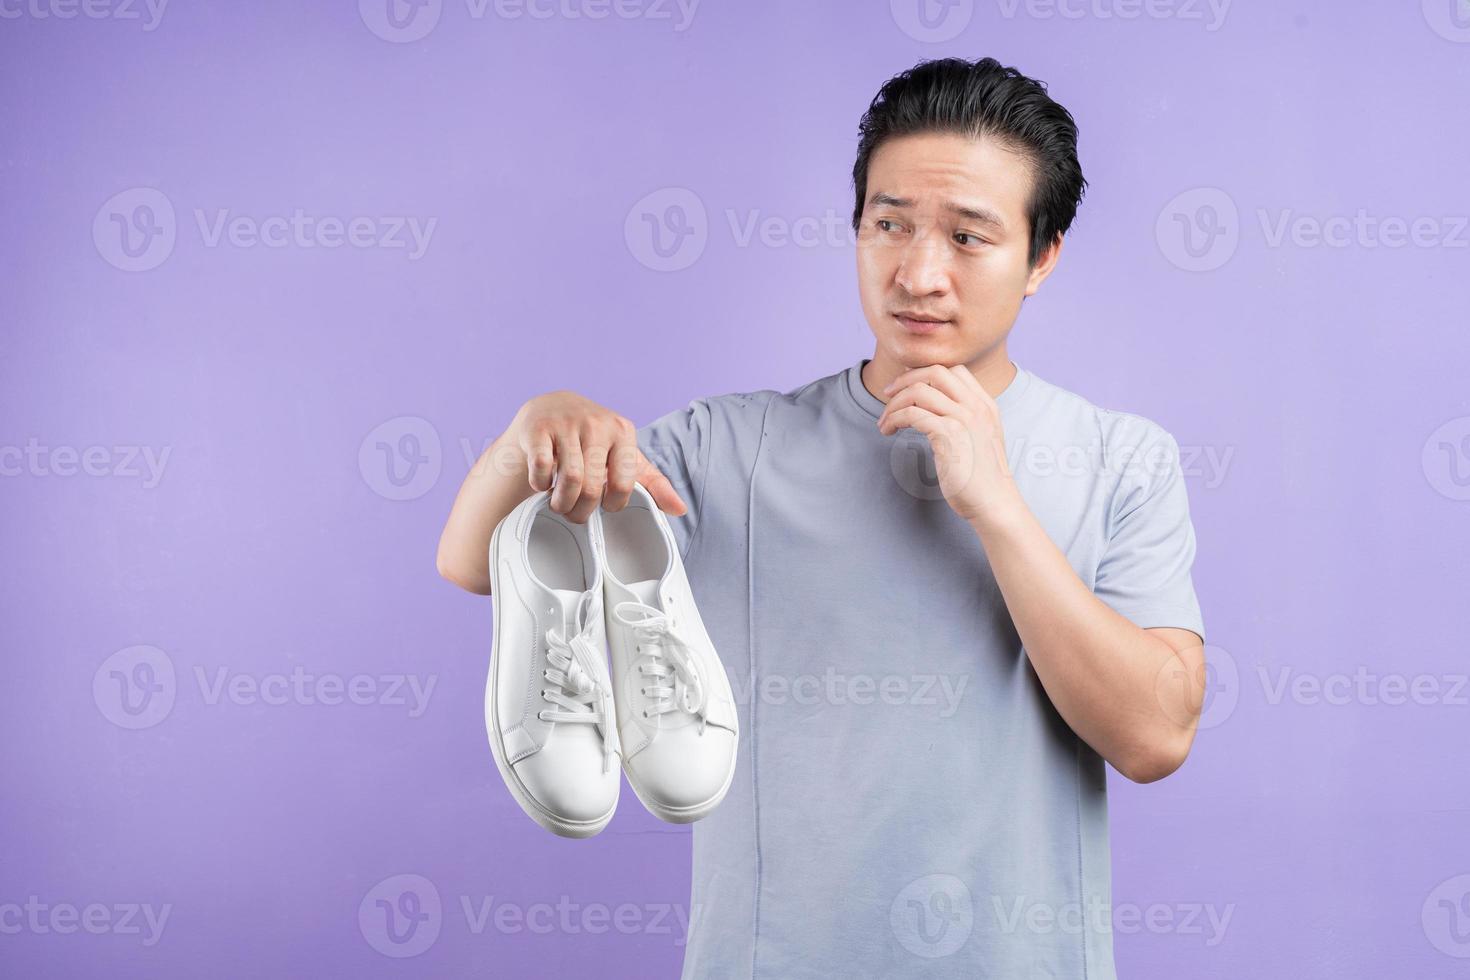 homme asiatique tenant des baskets sur fond violet photo